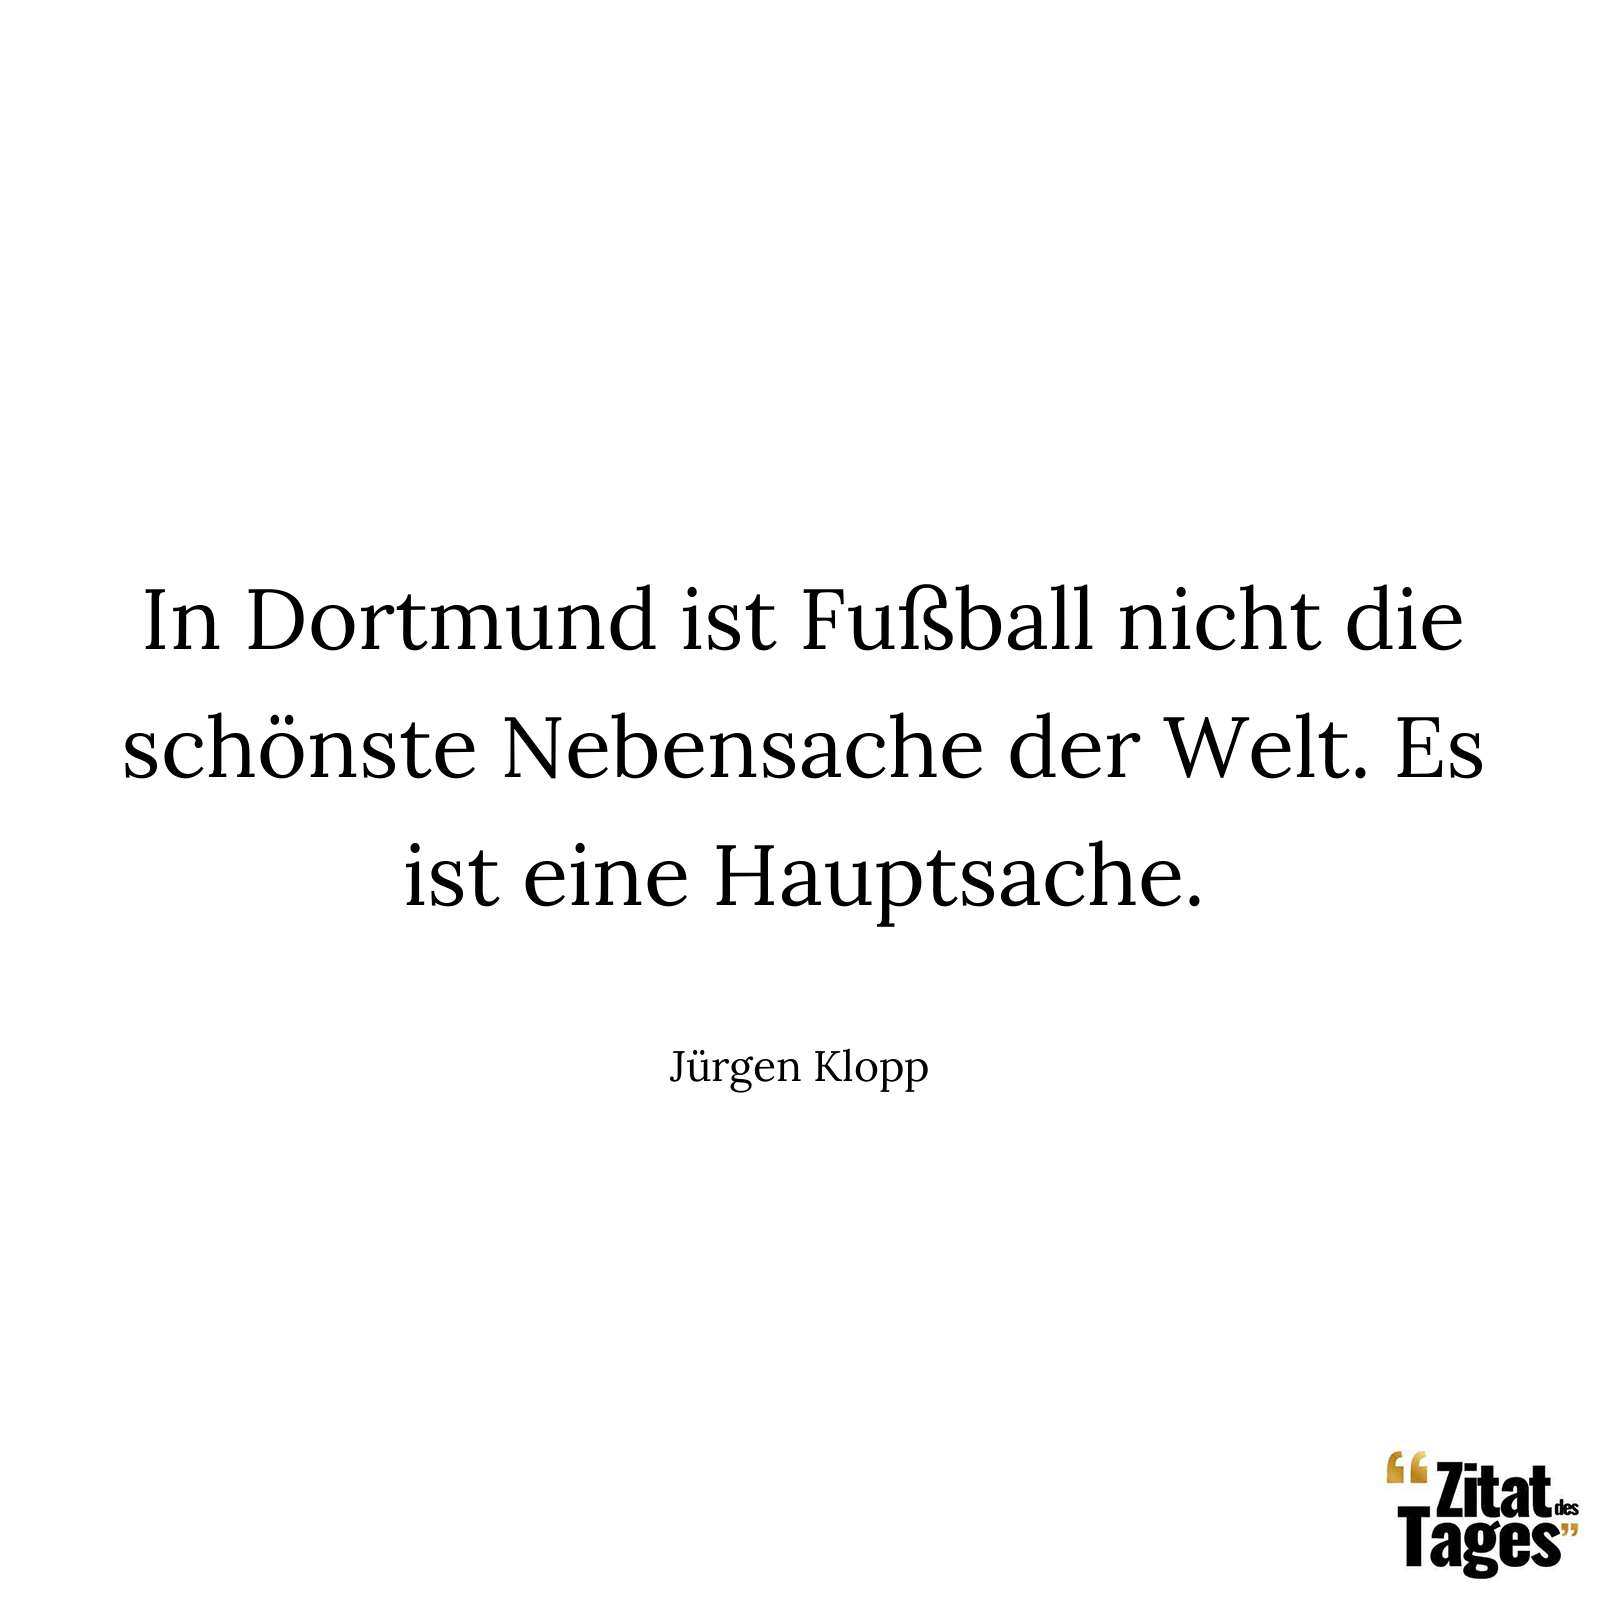 In Dortmund ist Fußball nicht die schönste Nebensache der Welt. Es ist eine Hauptsache. - Jürgen Klopp